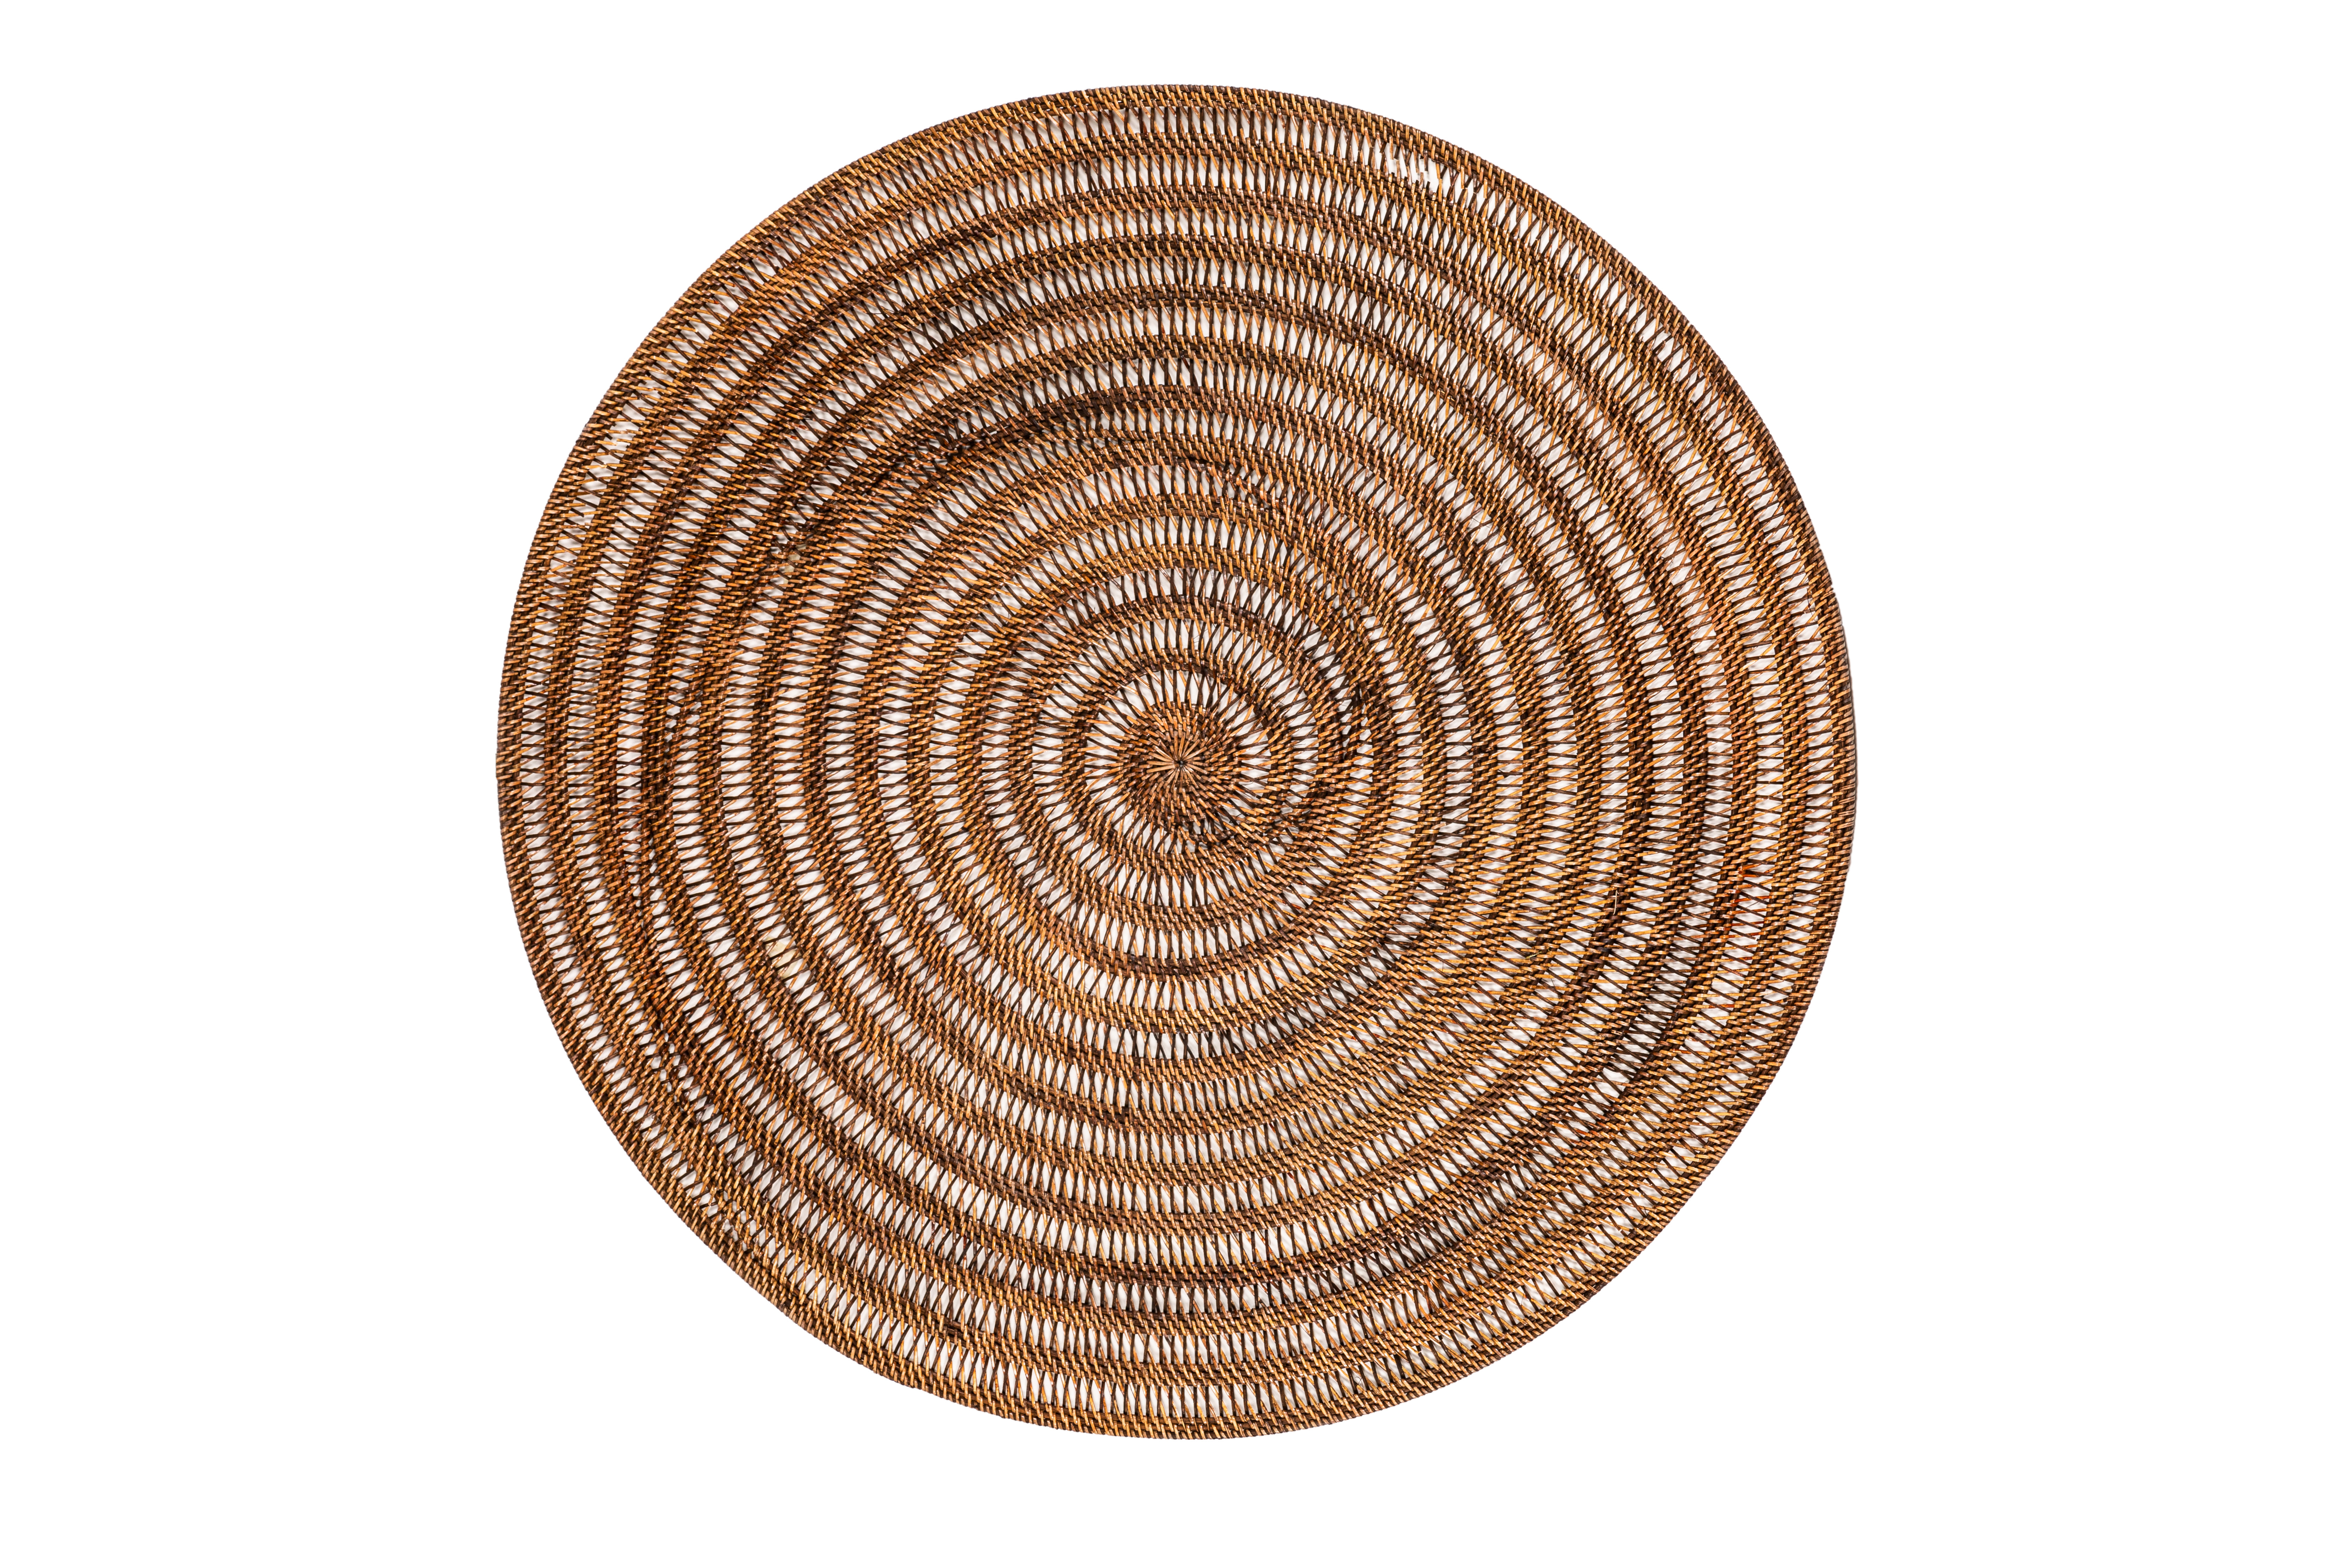 Décoration rattan, rond - dia 100 cm - SPIRAL, brun foncé 